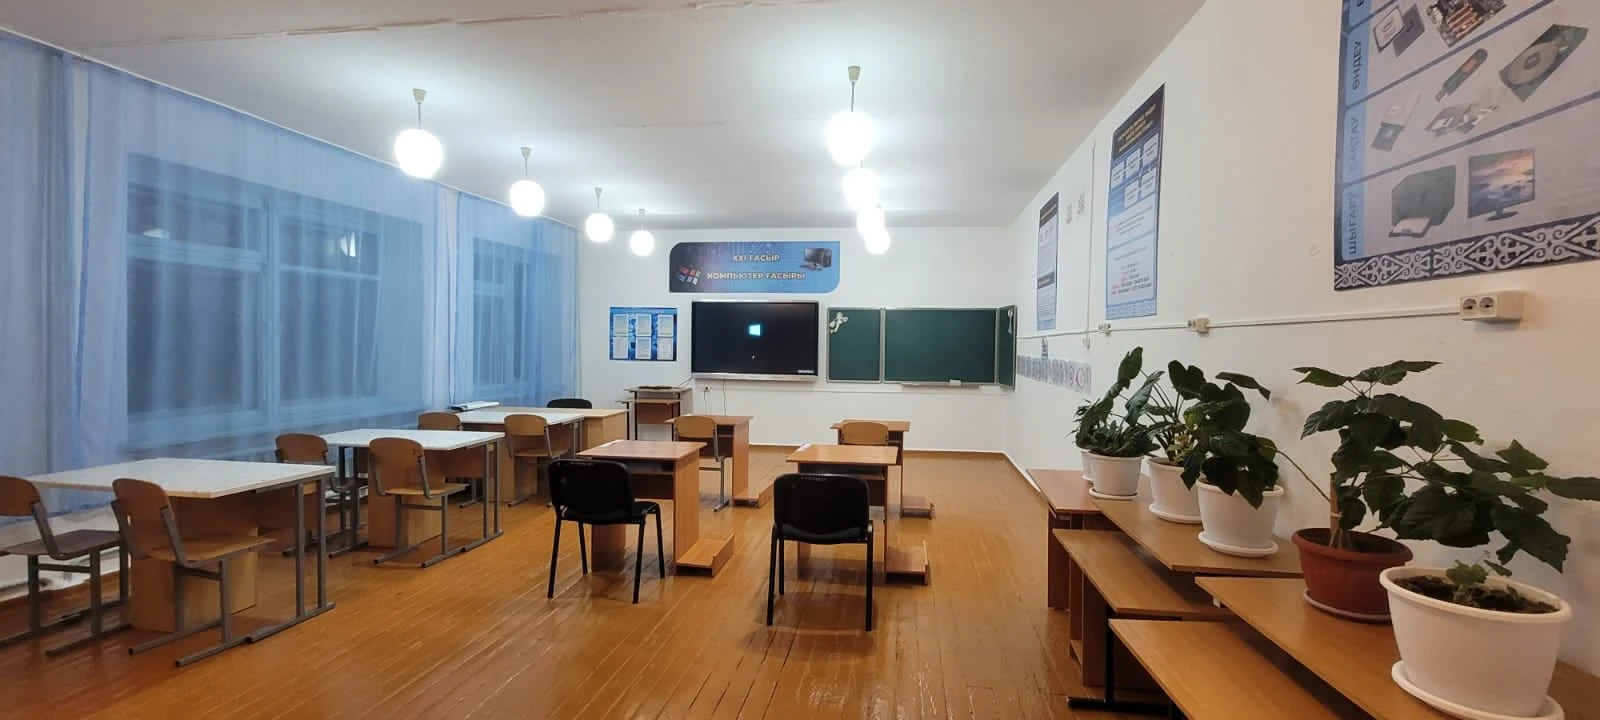 Фейковая новость про школу в районе Алтай может обернуться судебным разбирательством (видео)